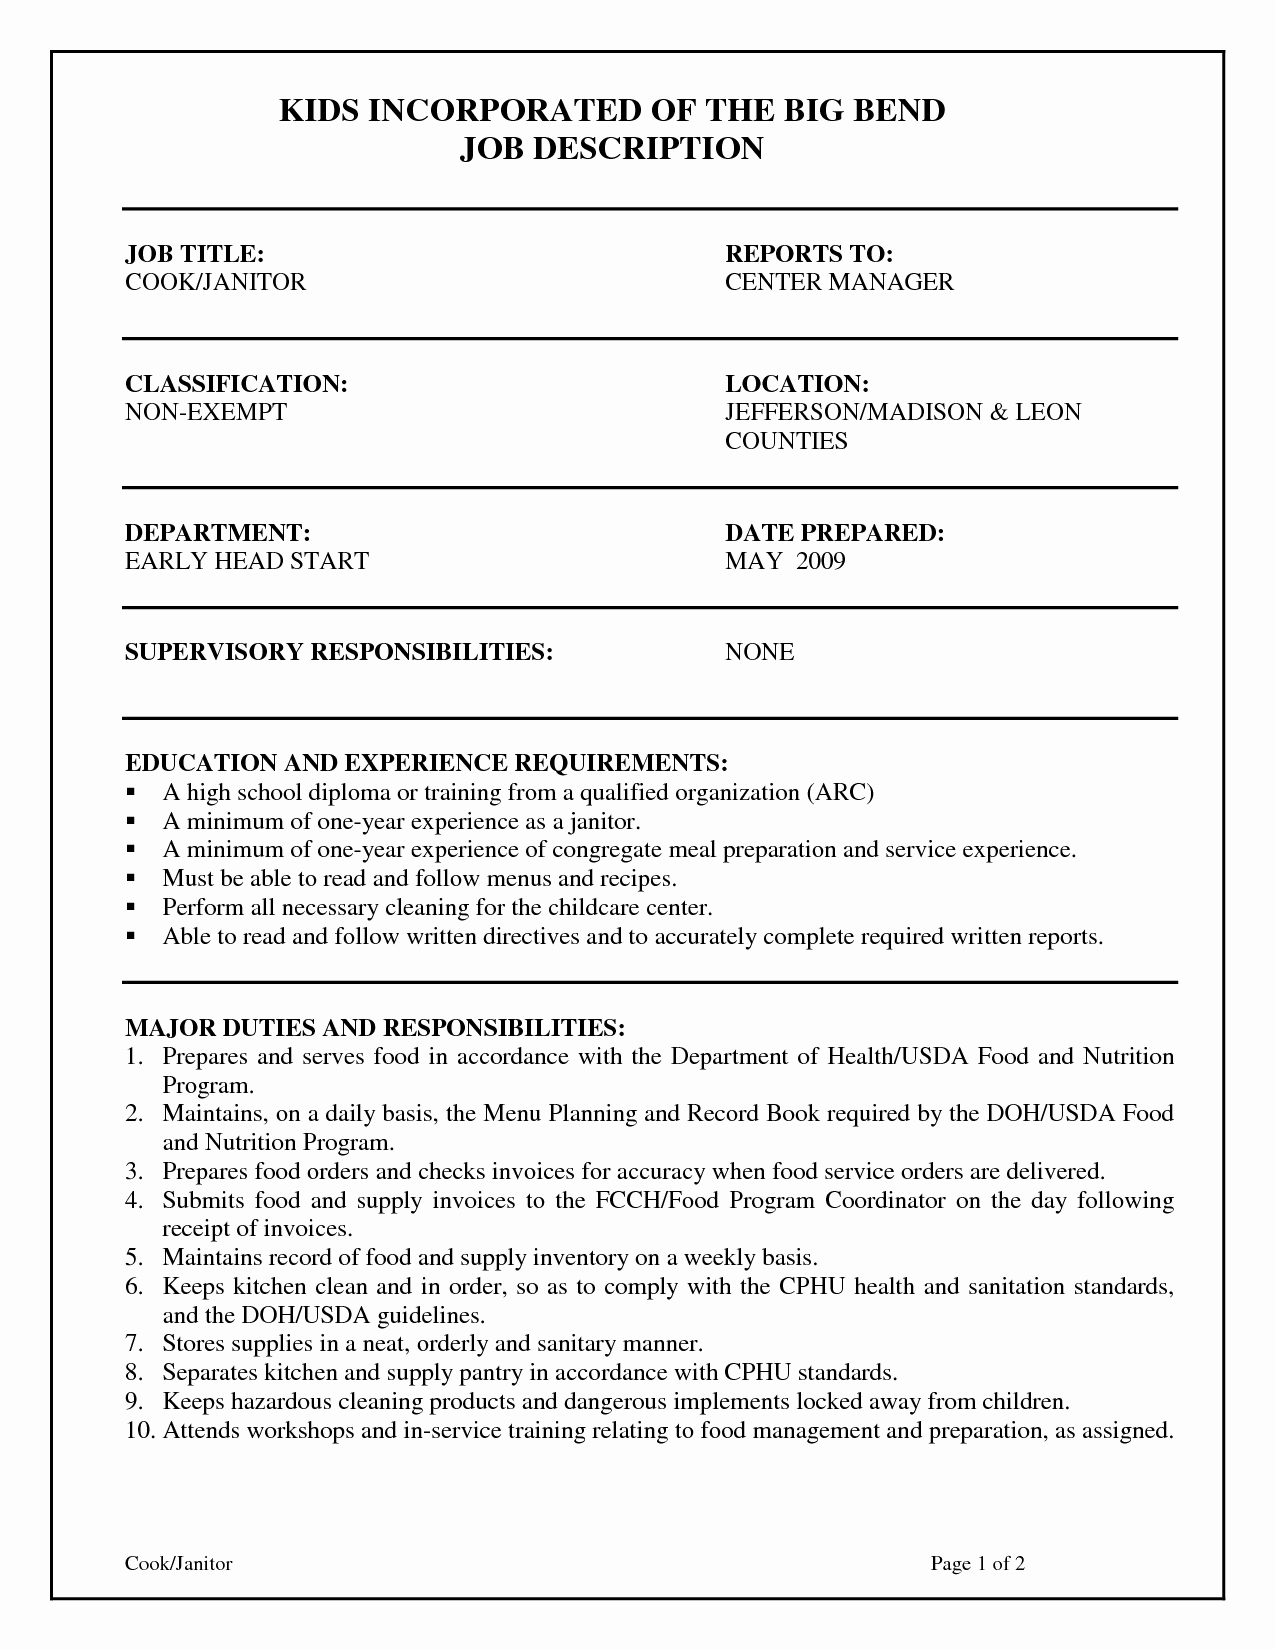 Resume Job Description for Janitor Samplebusinessresume